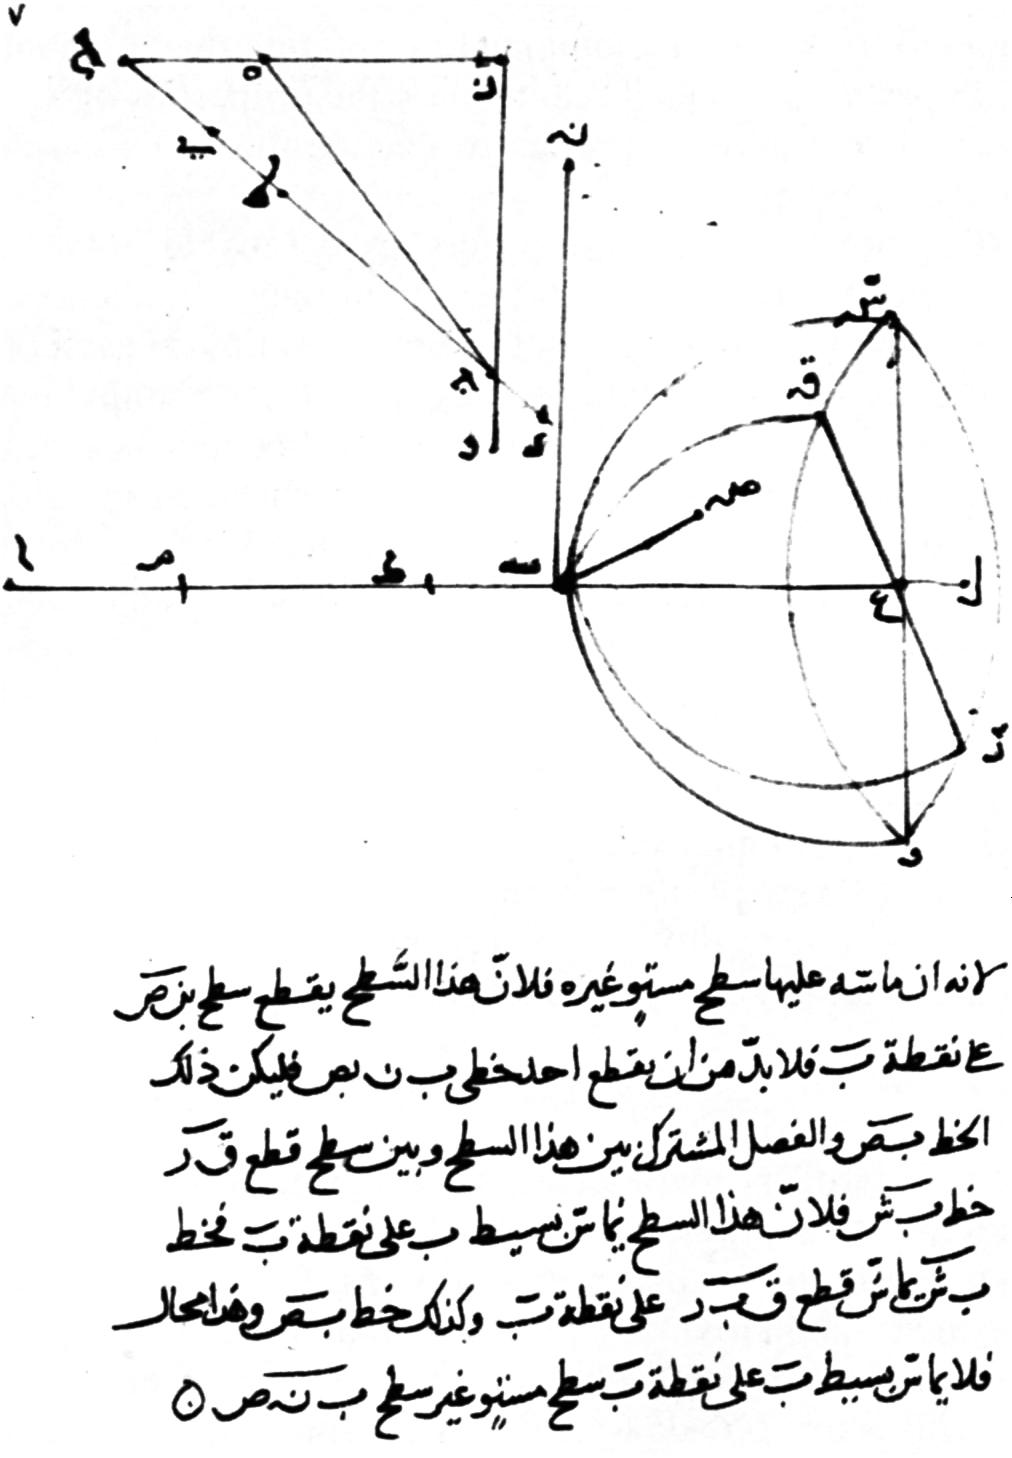 Skisser av brytingsvinkel og forklarande tekst på persisk. Illustrasjon.